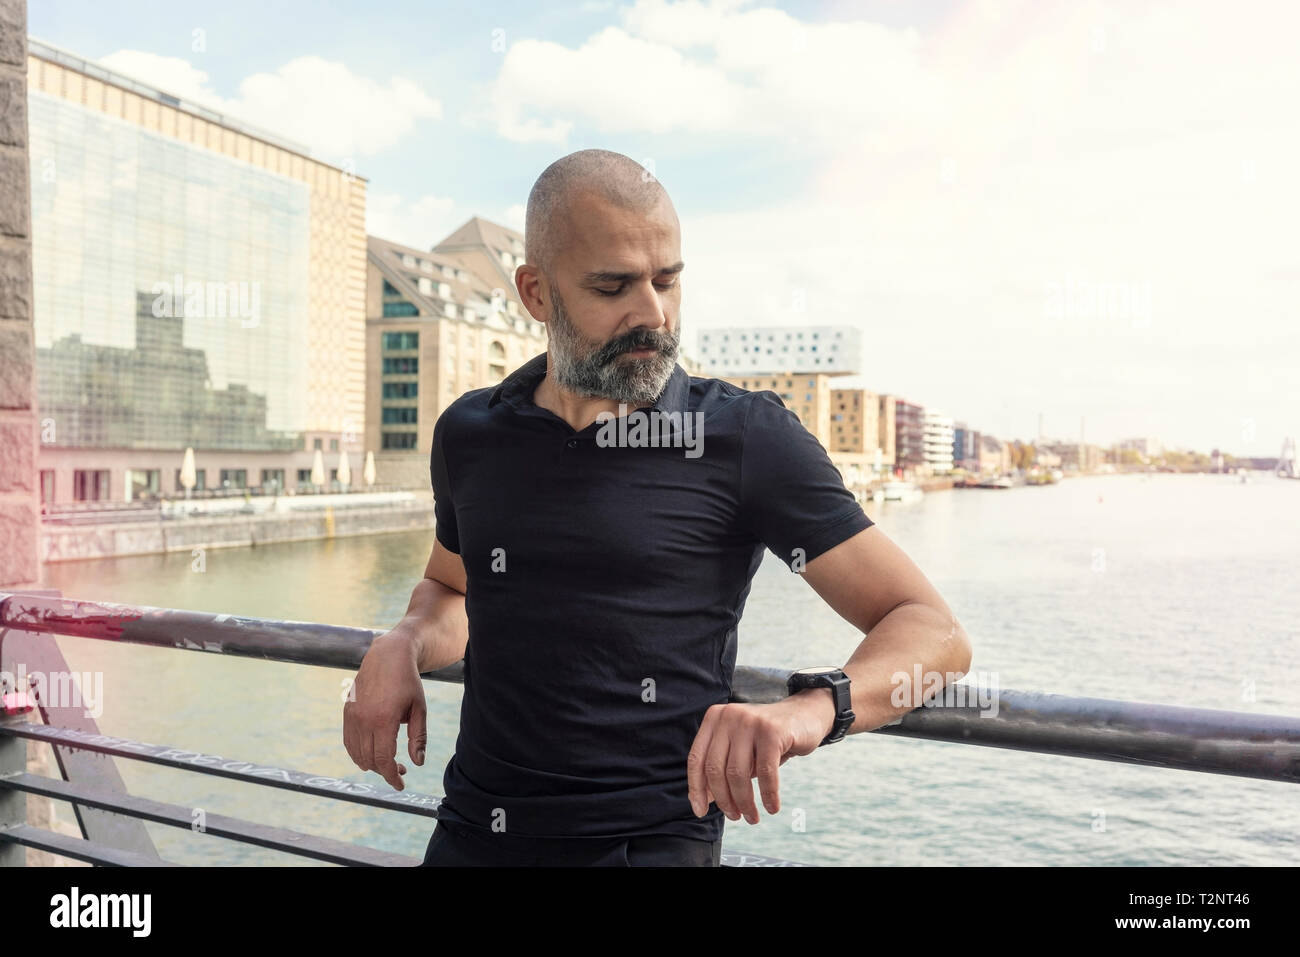 Uomo che guarda smartwatch sul ponte, sul fiume e gli edifici in background, Berlino, Germania Foto Stock